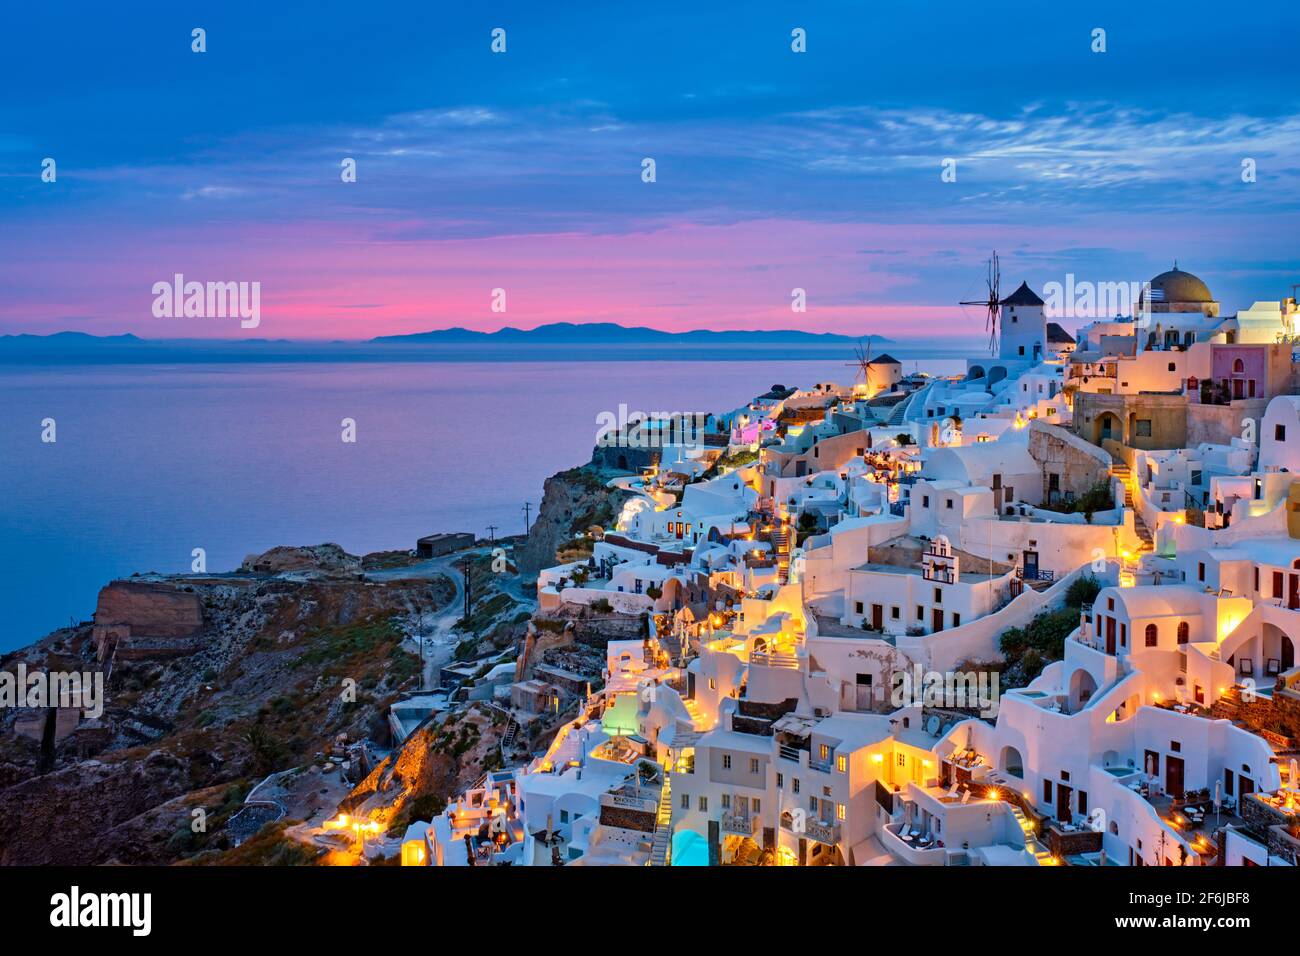 Famous greek tourist destination Oia, Greece Stock Photo